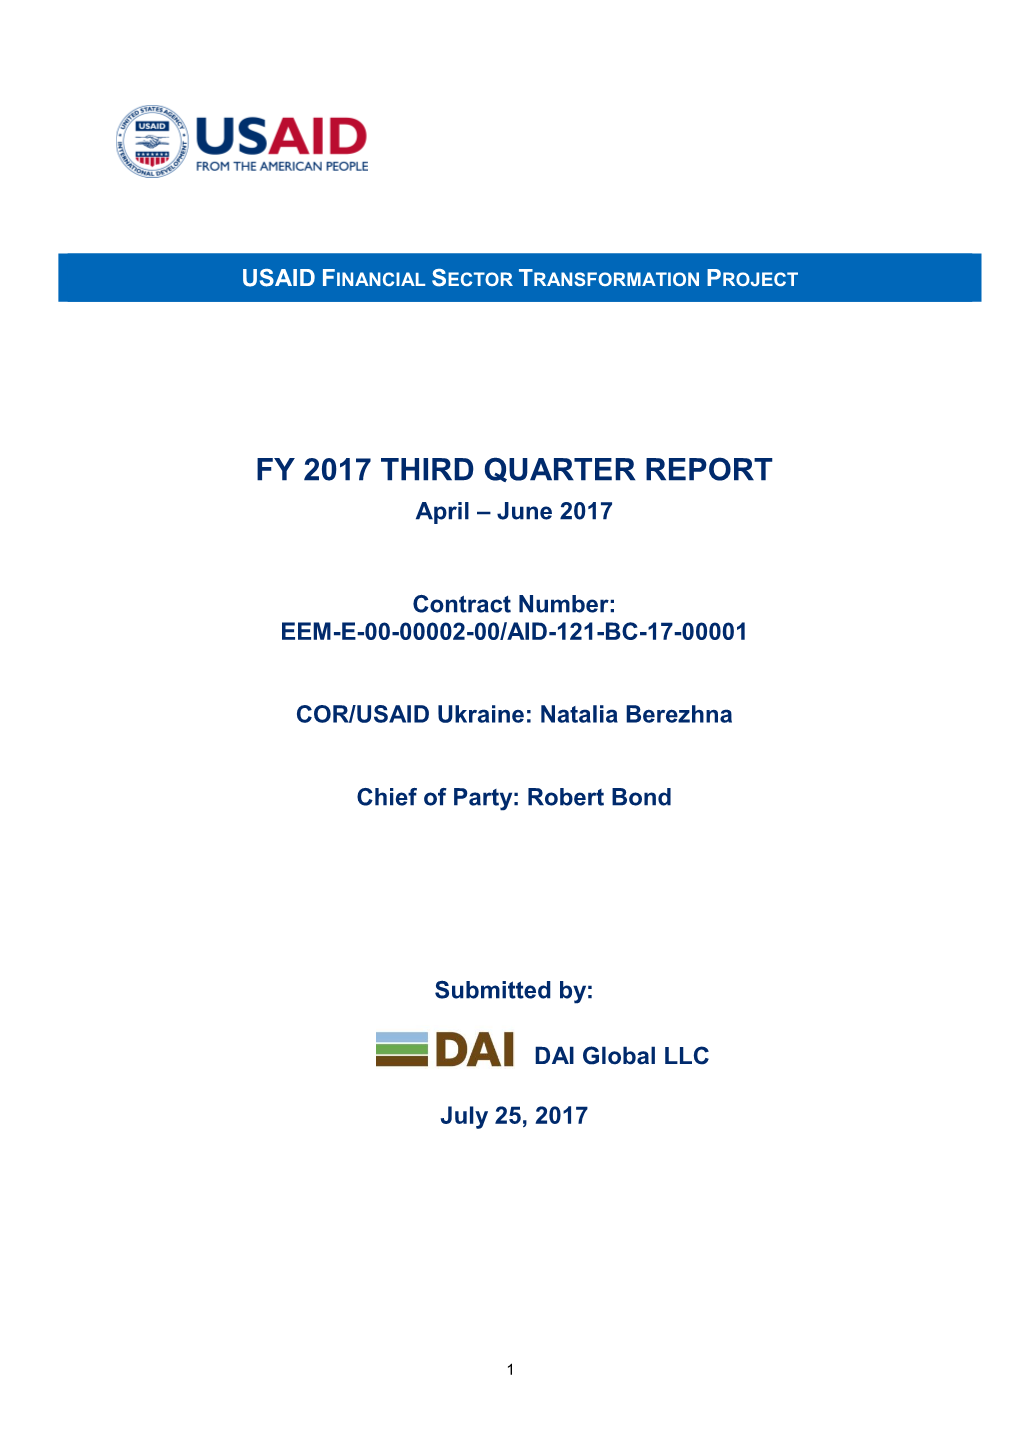 FY 2017 THIRD QUARTER REPORT April – June 2017